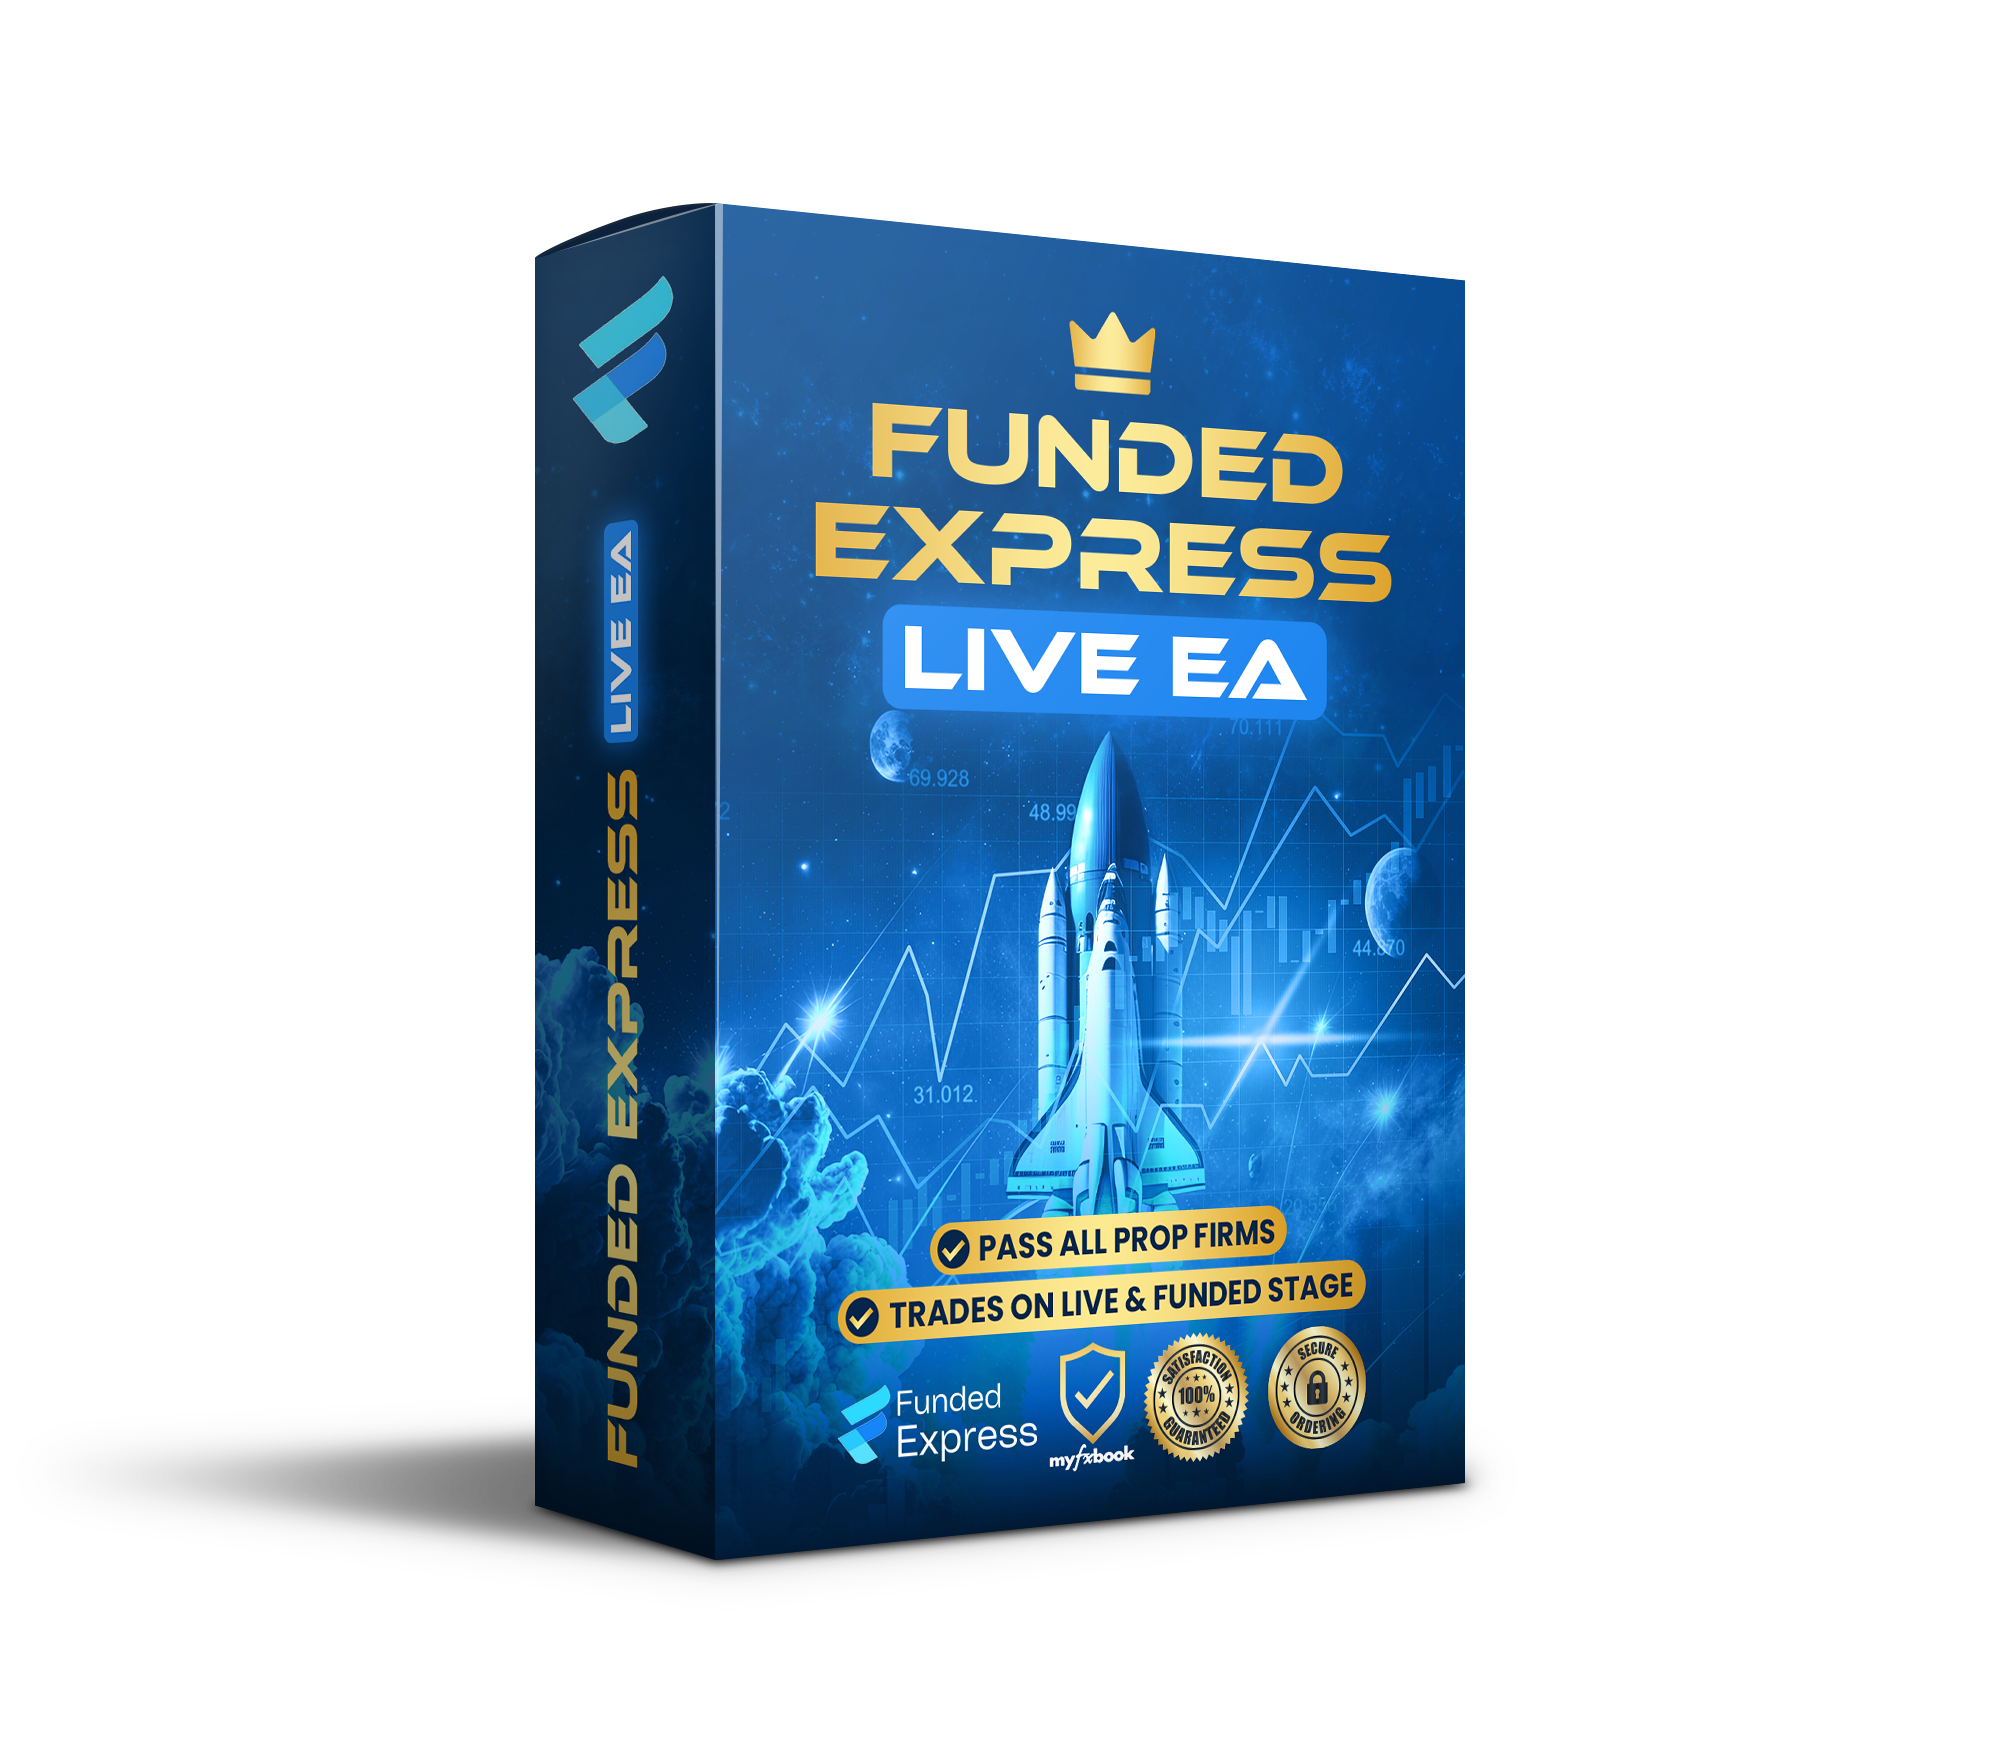 FundedExpress Live EA